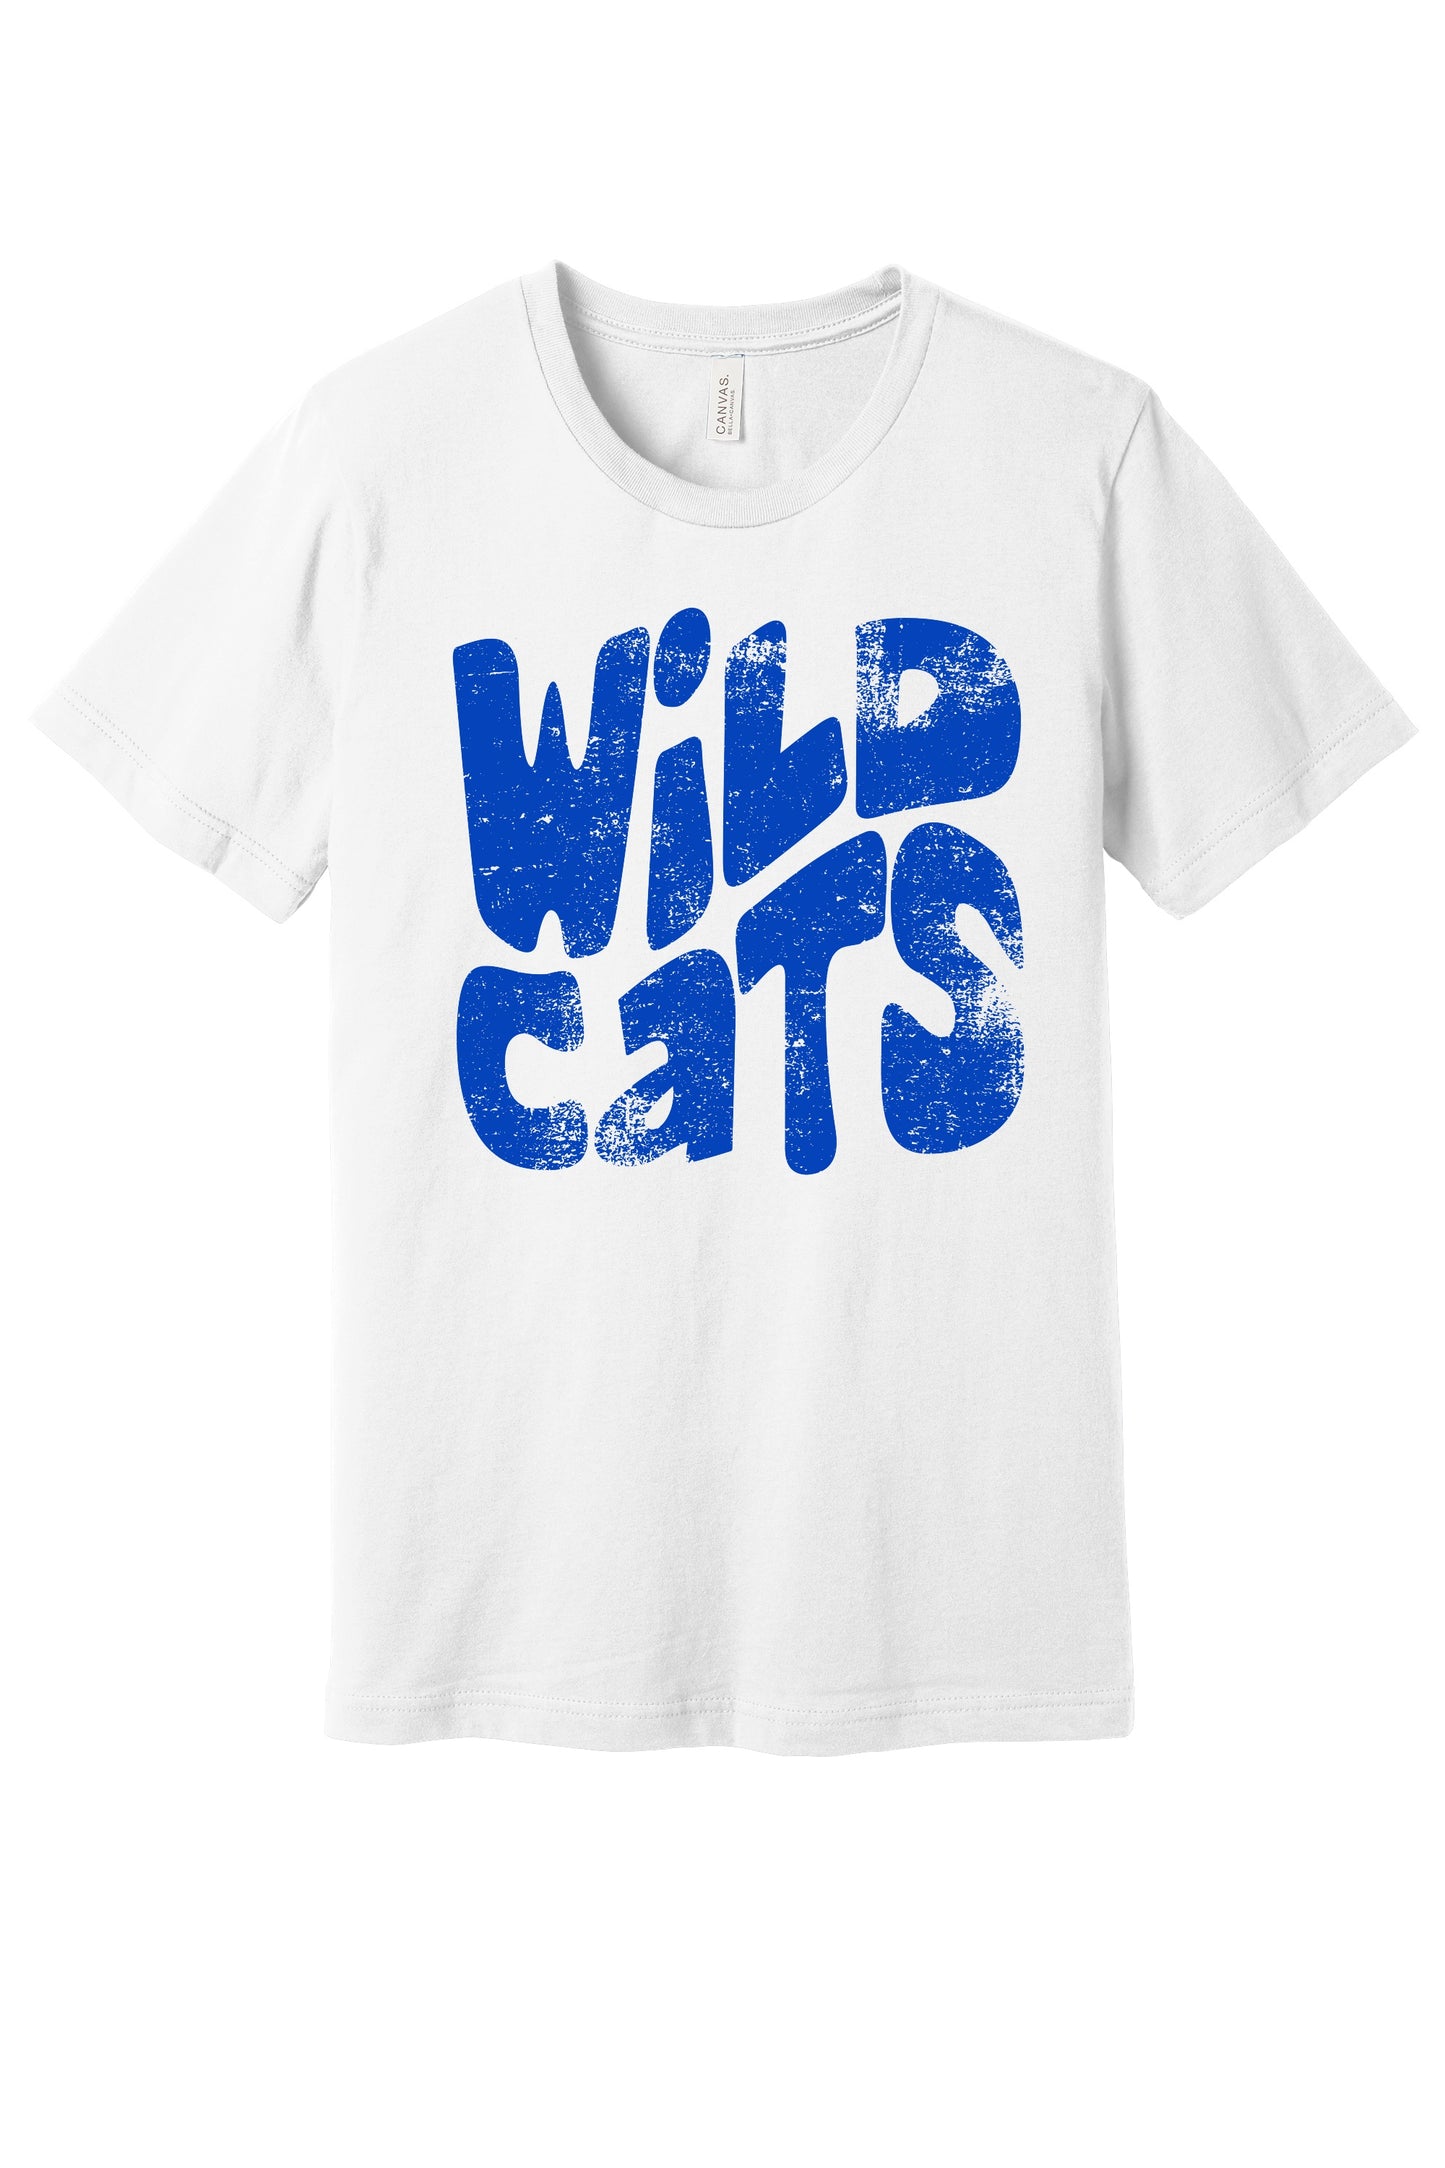 Wildcats Grunge T-Shirt